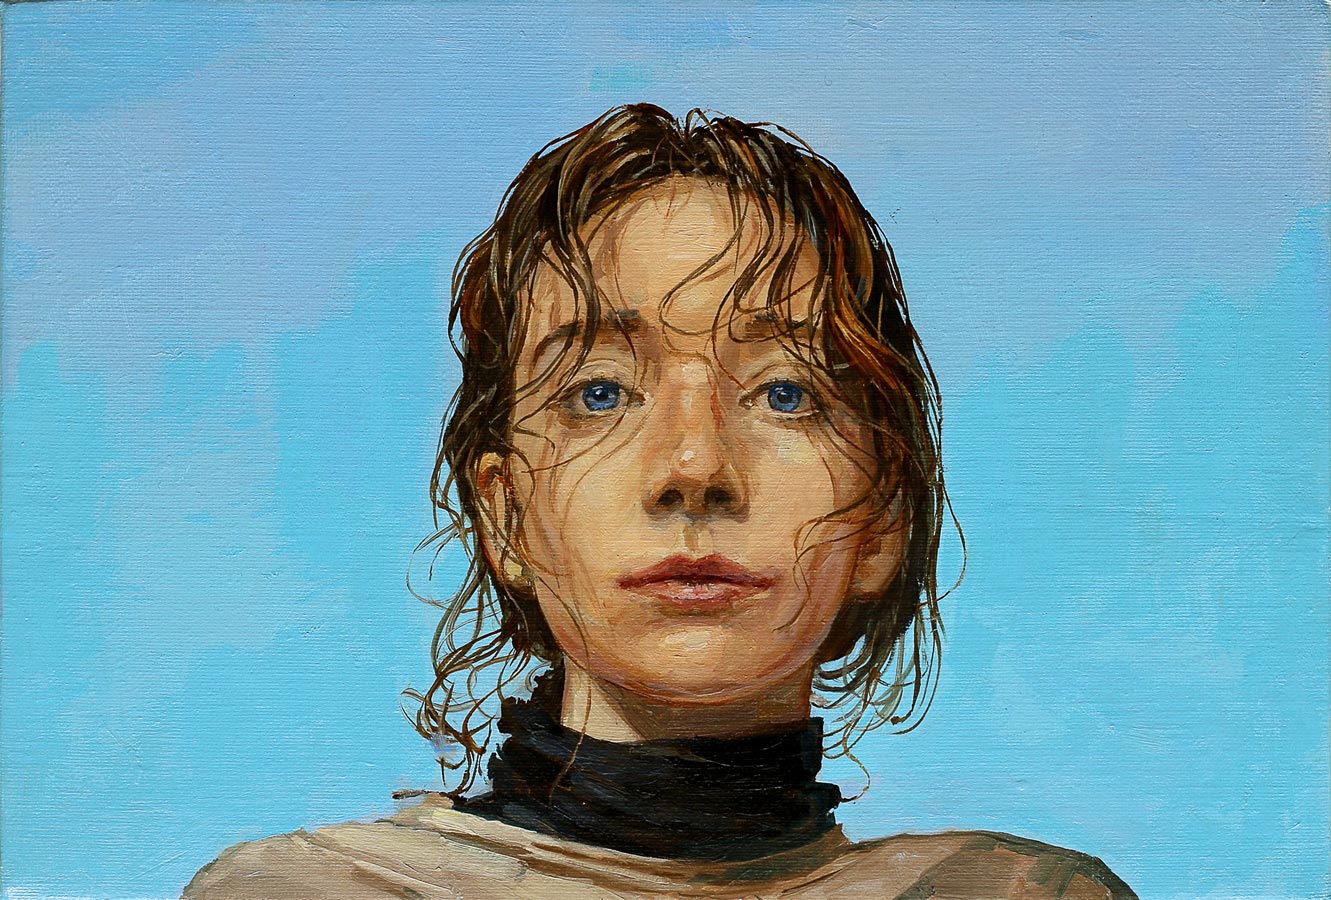 Lila bleu. Huile sur toile, 24 x 35 cm, 2020